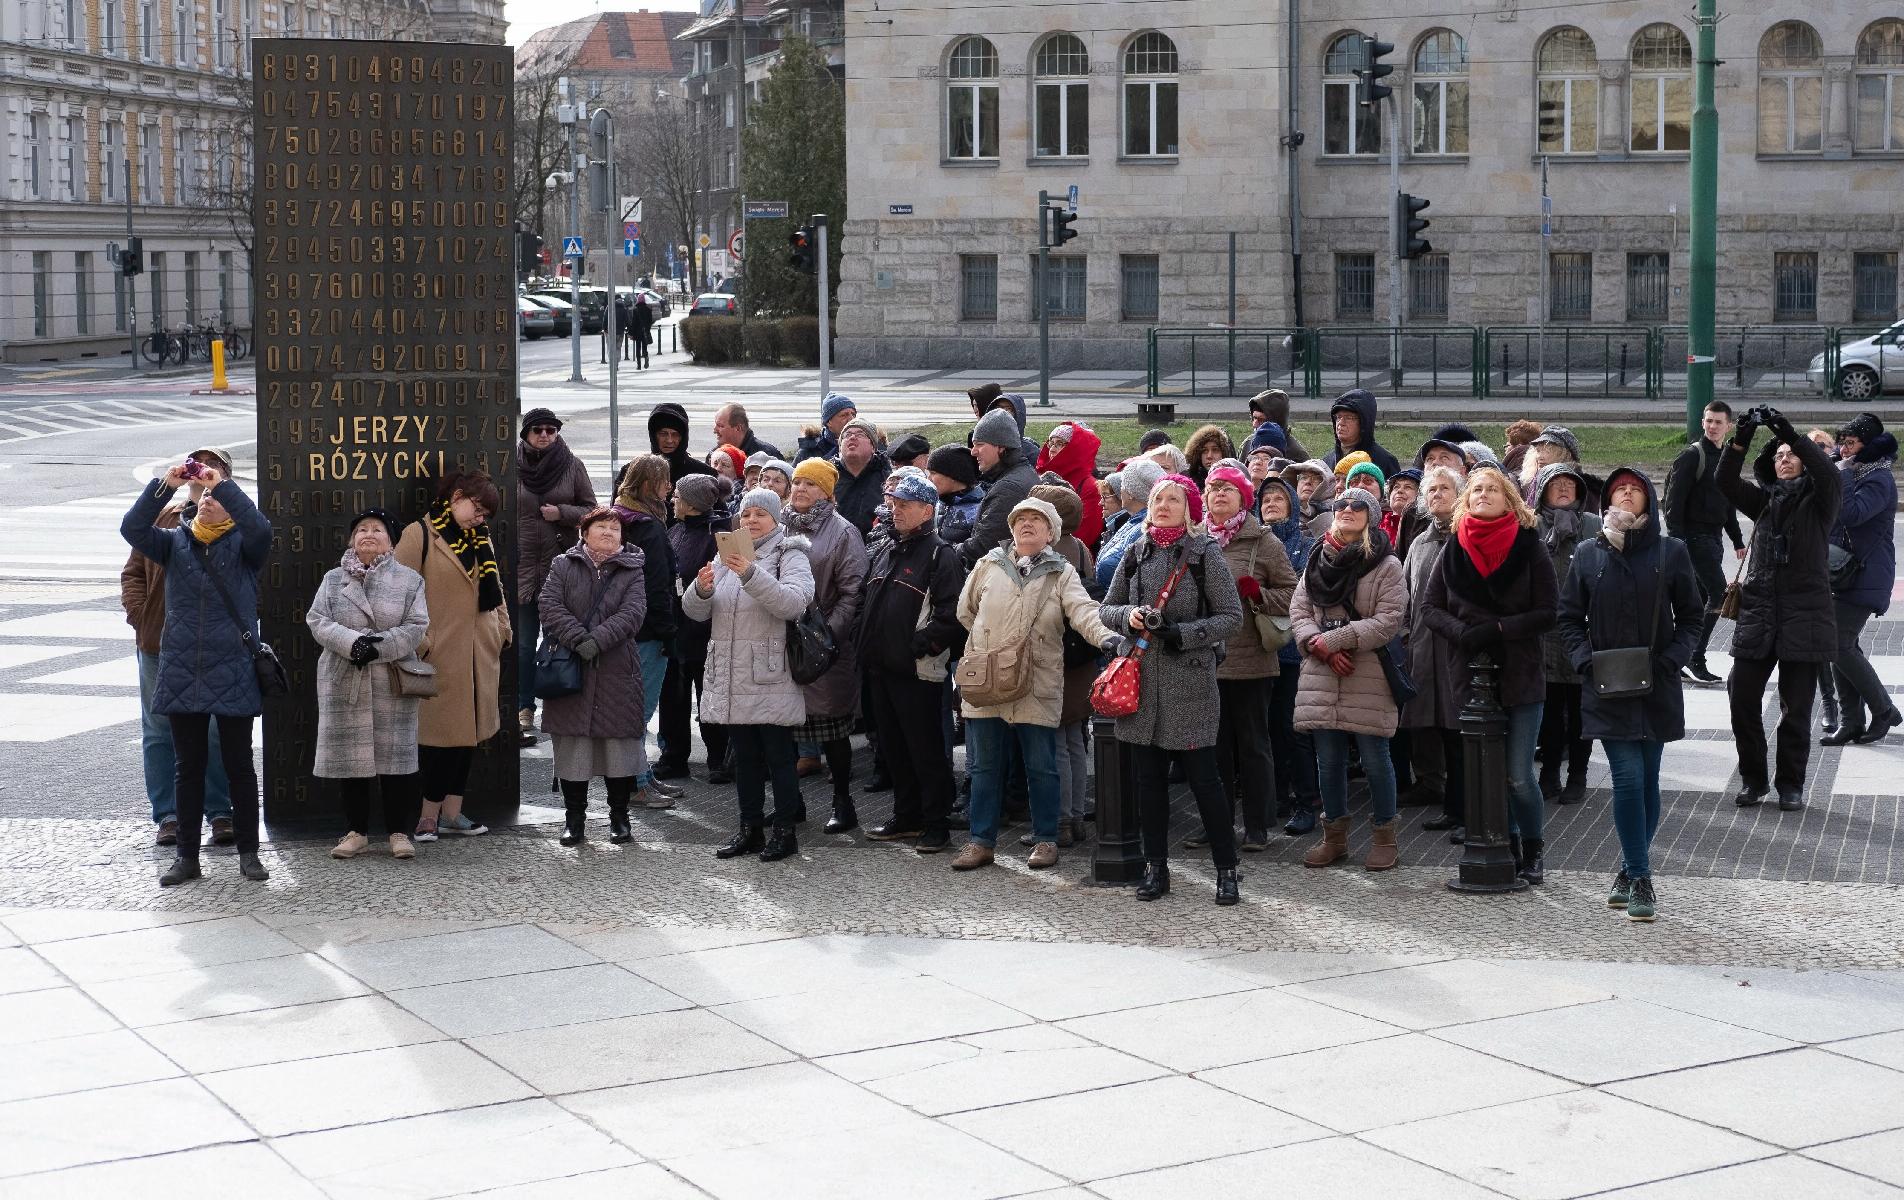 Grupa około 50 kobiet i mężczyzn stoi na ulicy Św. Marcin przy Pomniku kryptologów w Poznaniu. Zdjęcie zrobione podczas zimy. Ludzie ubrani są w płaszcze i kurtki, panuje chłodna atmosfera.